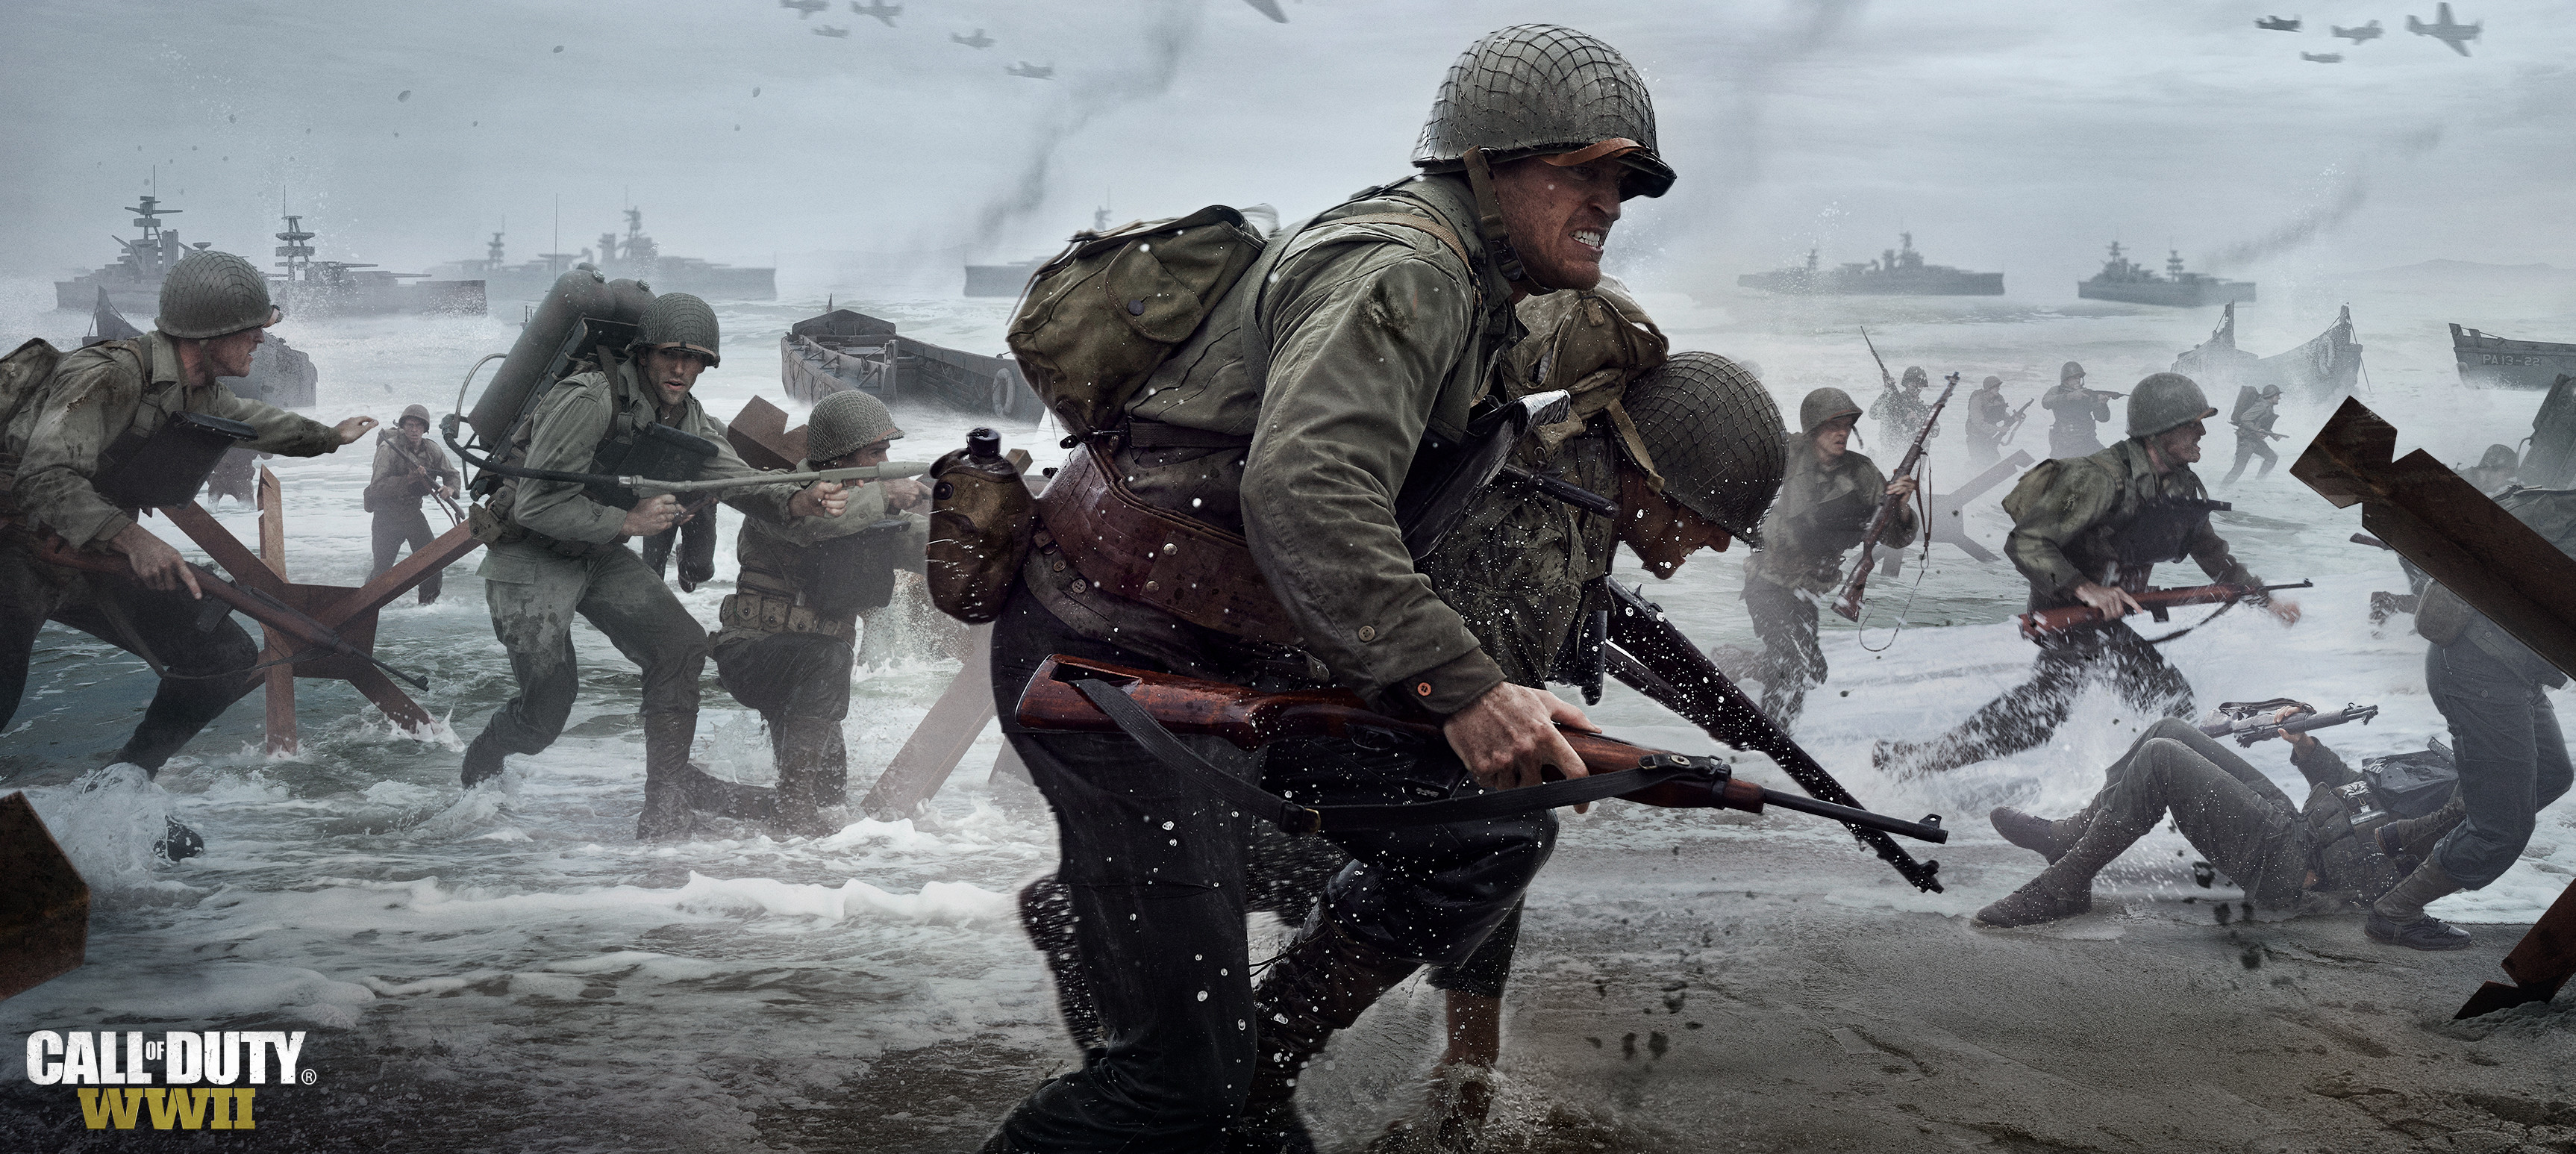 3452x1546 Computerspiele - Call of Duty: WWII Soldat Wallpaper